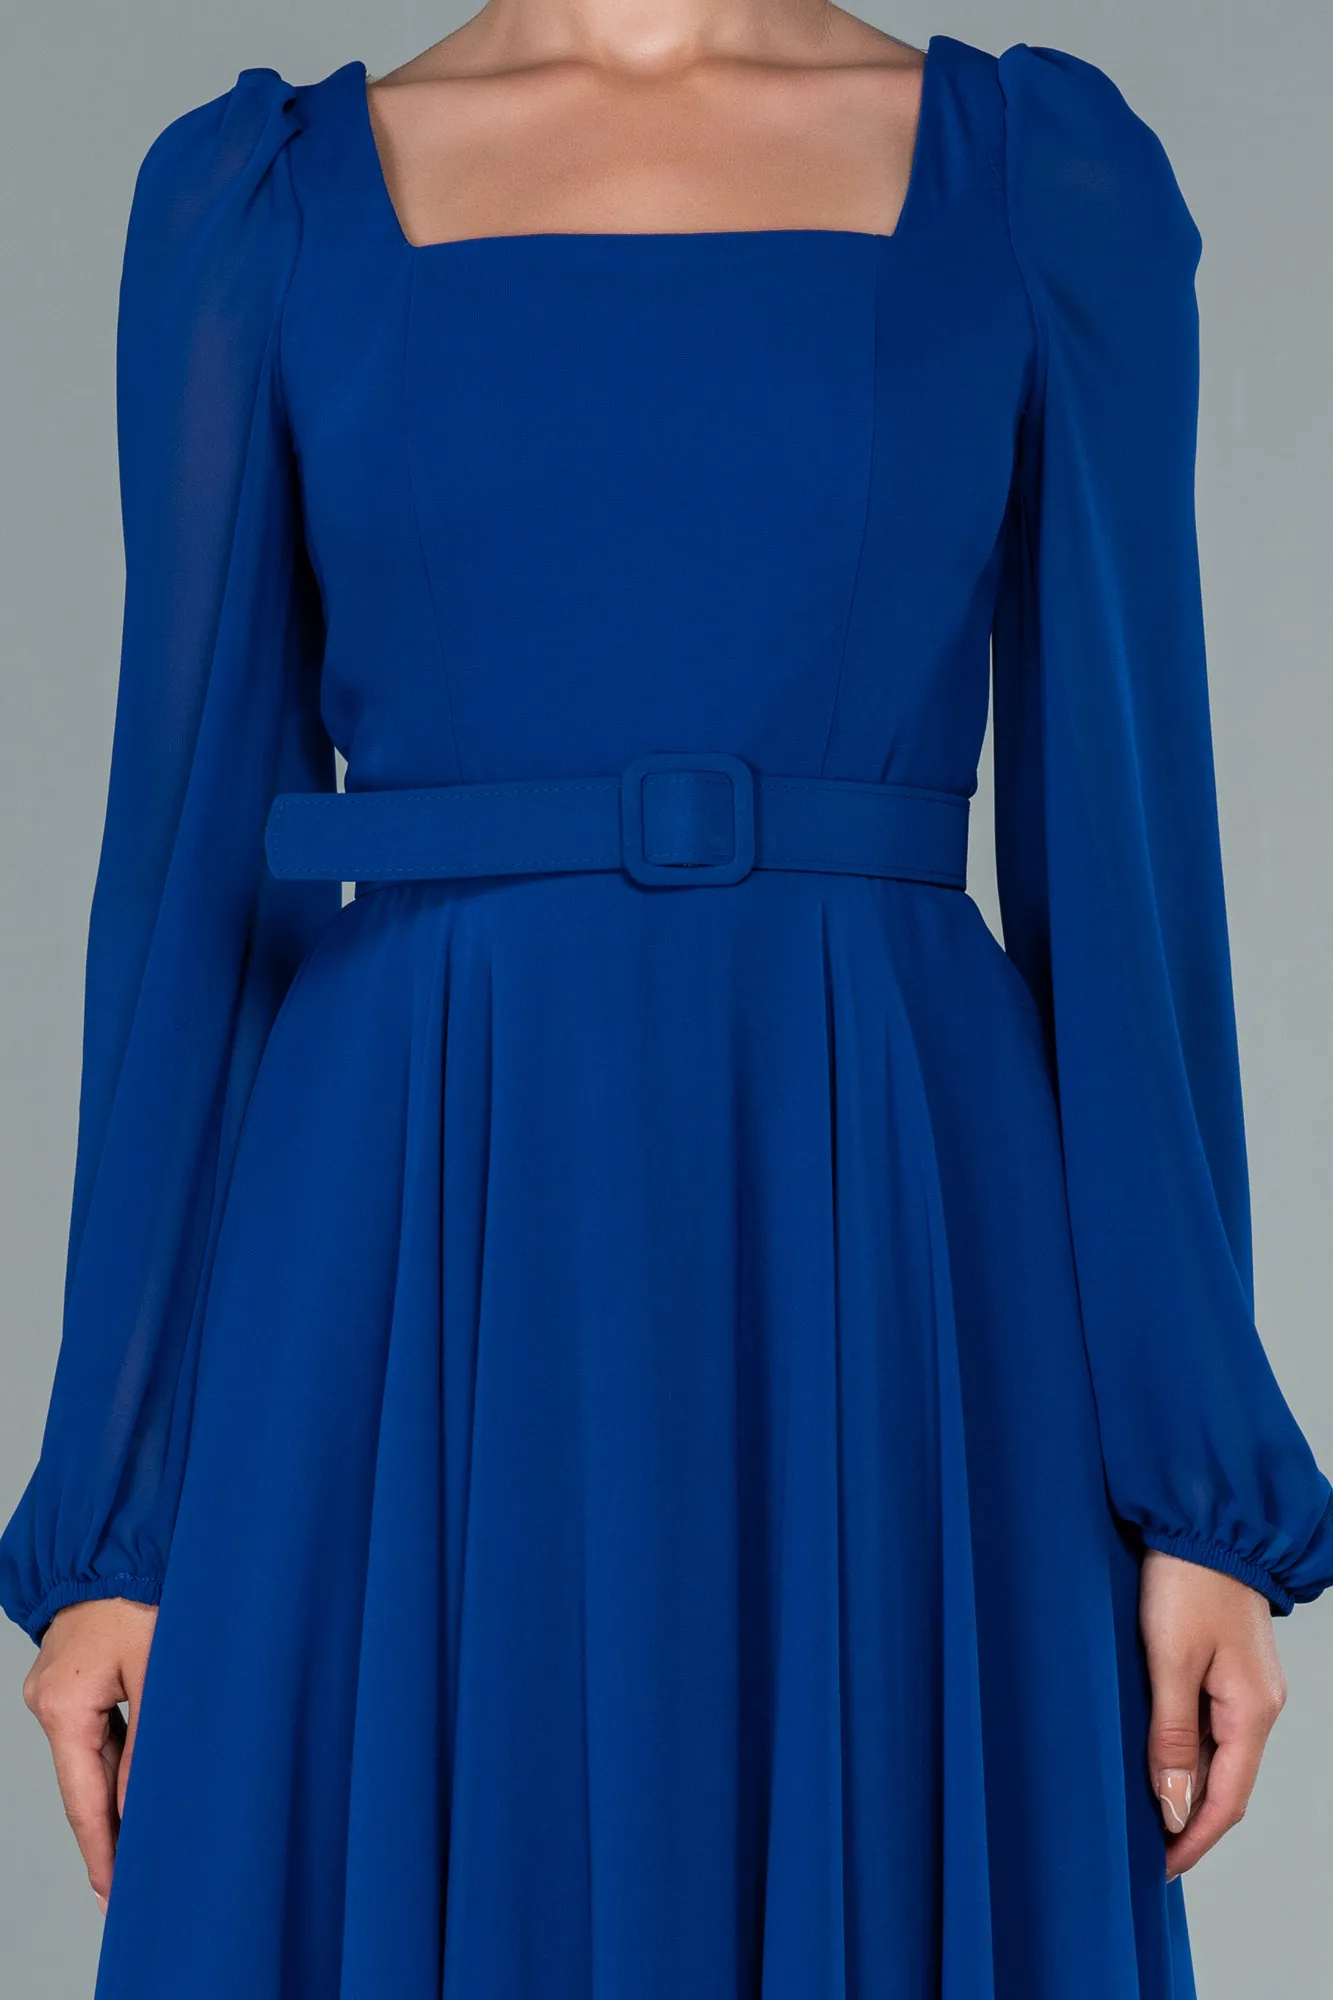 Sax Blue-Midi Chiffon Invitation Dress ABK1441